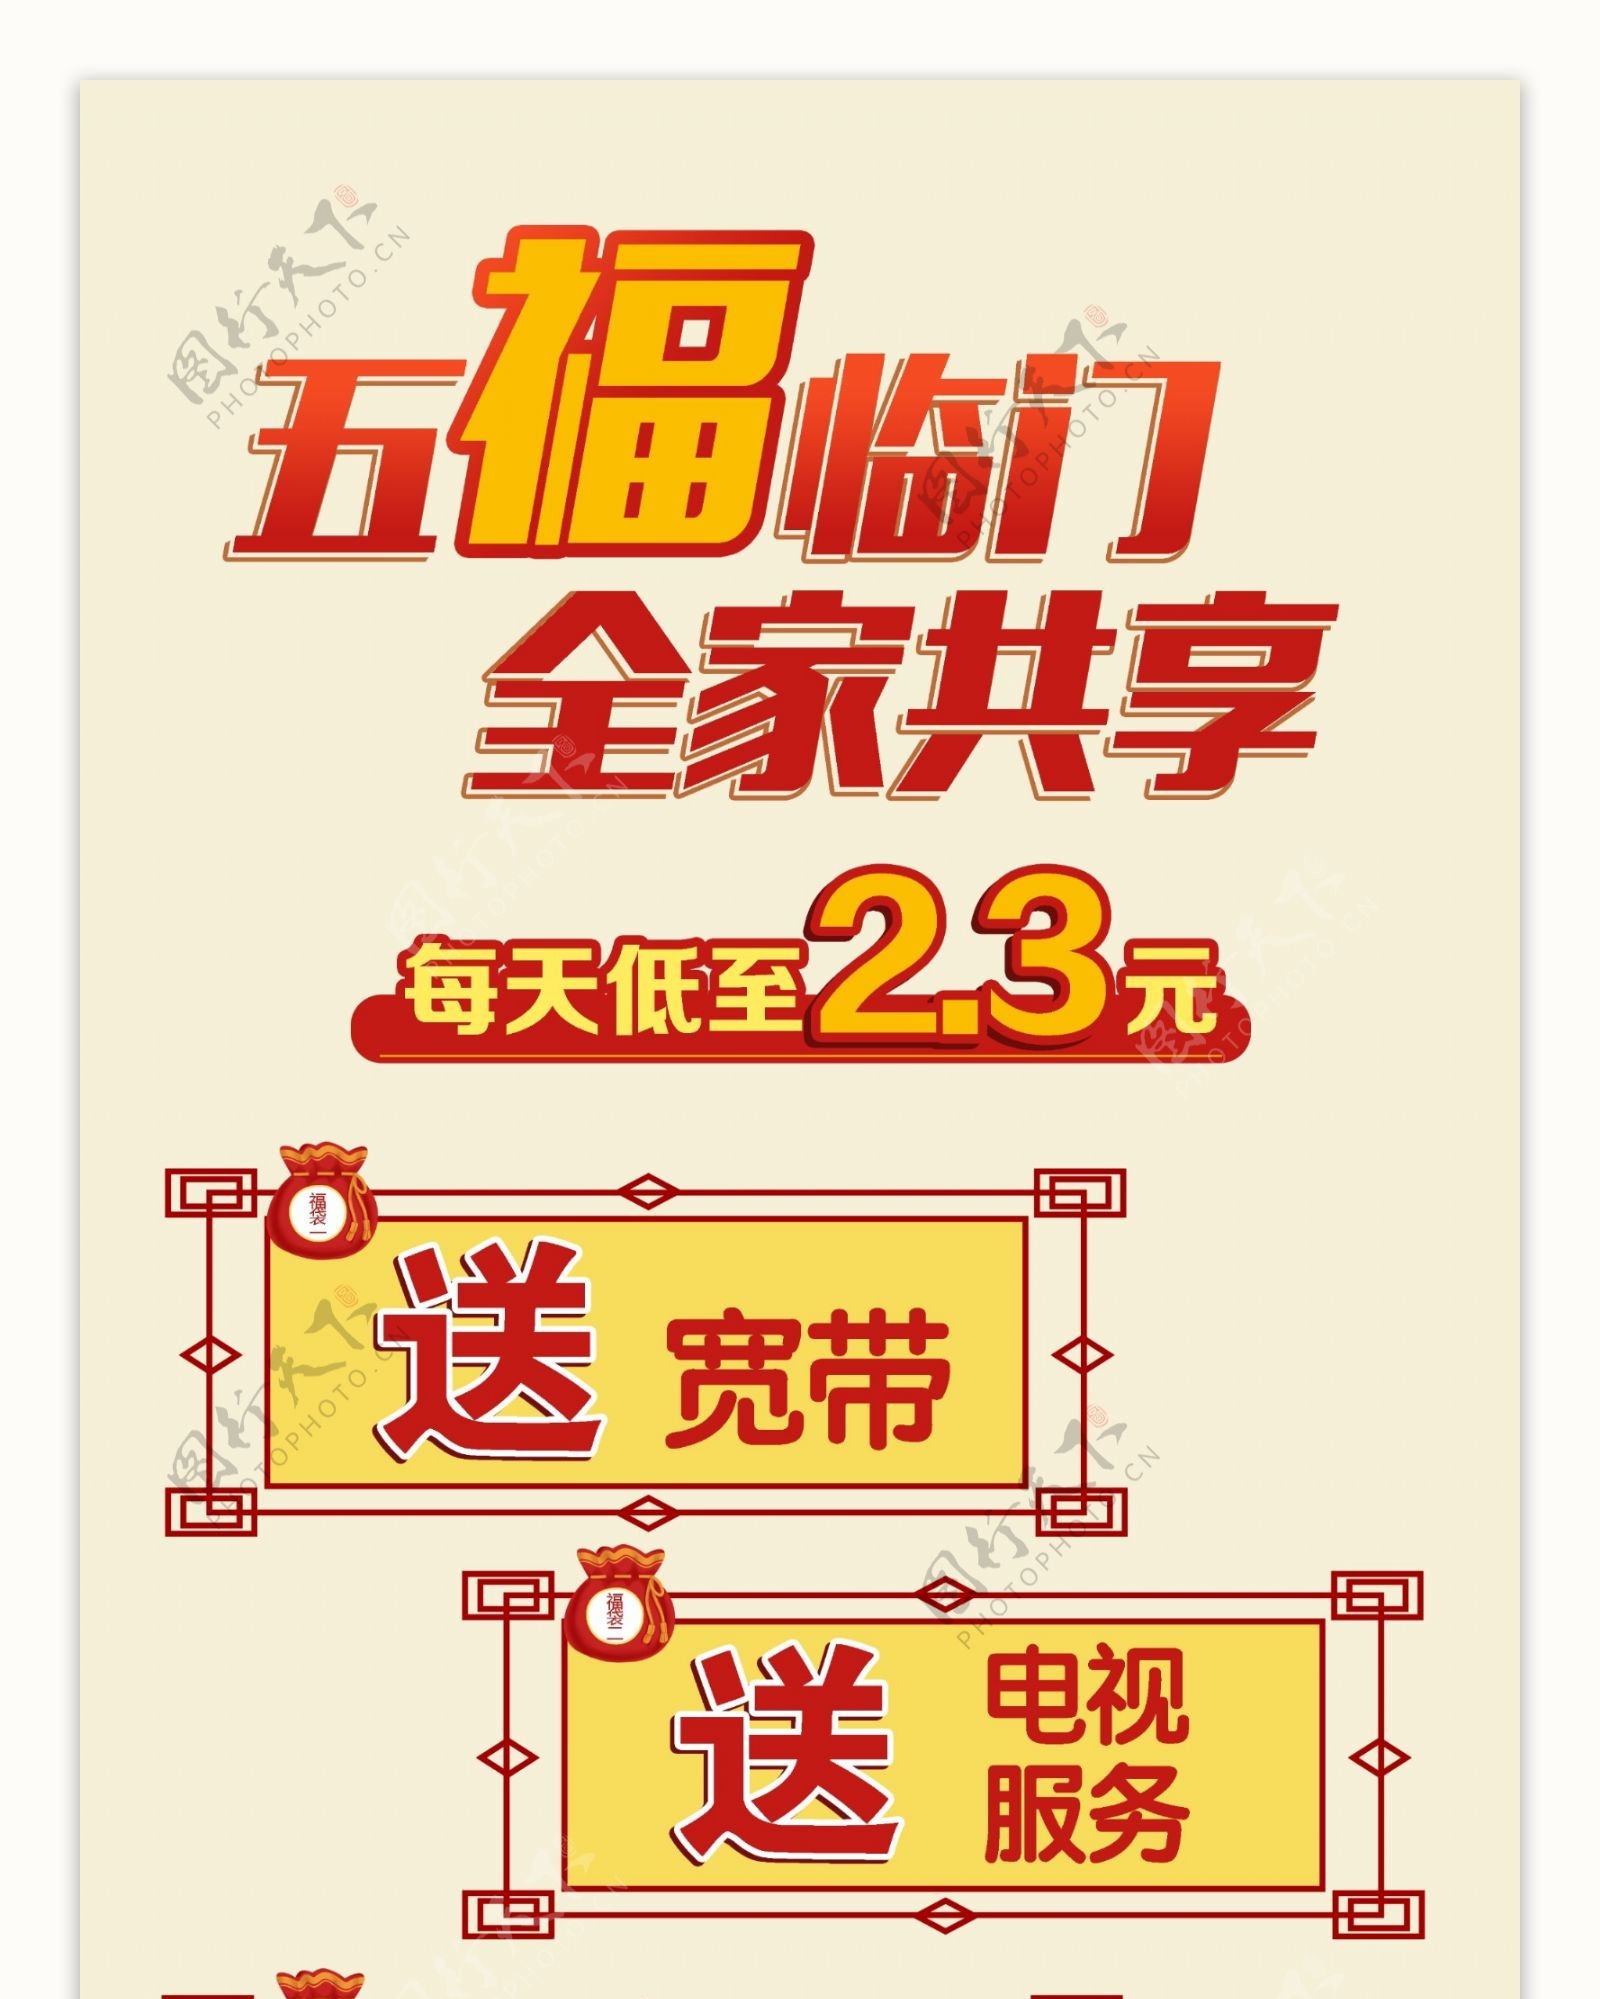 中国移动五福春节促销海报展架